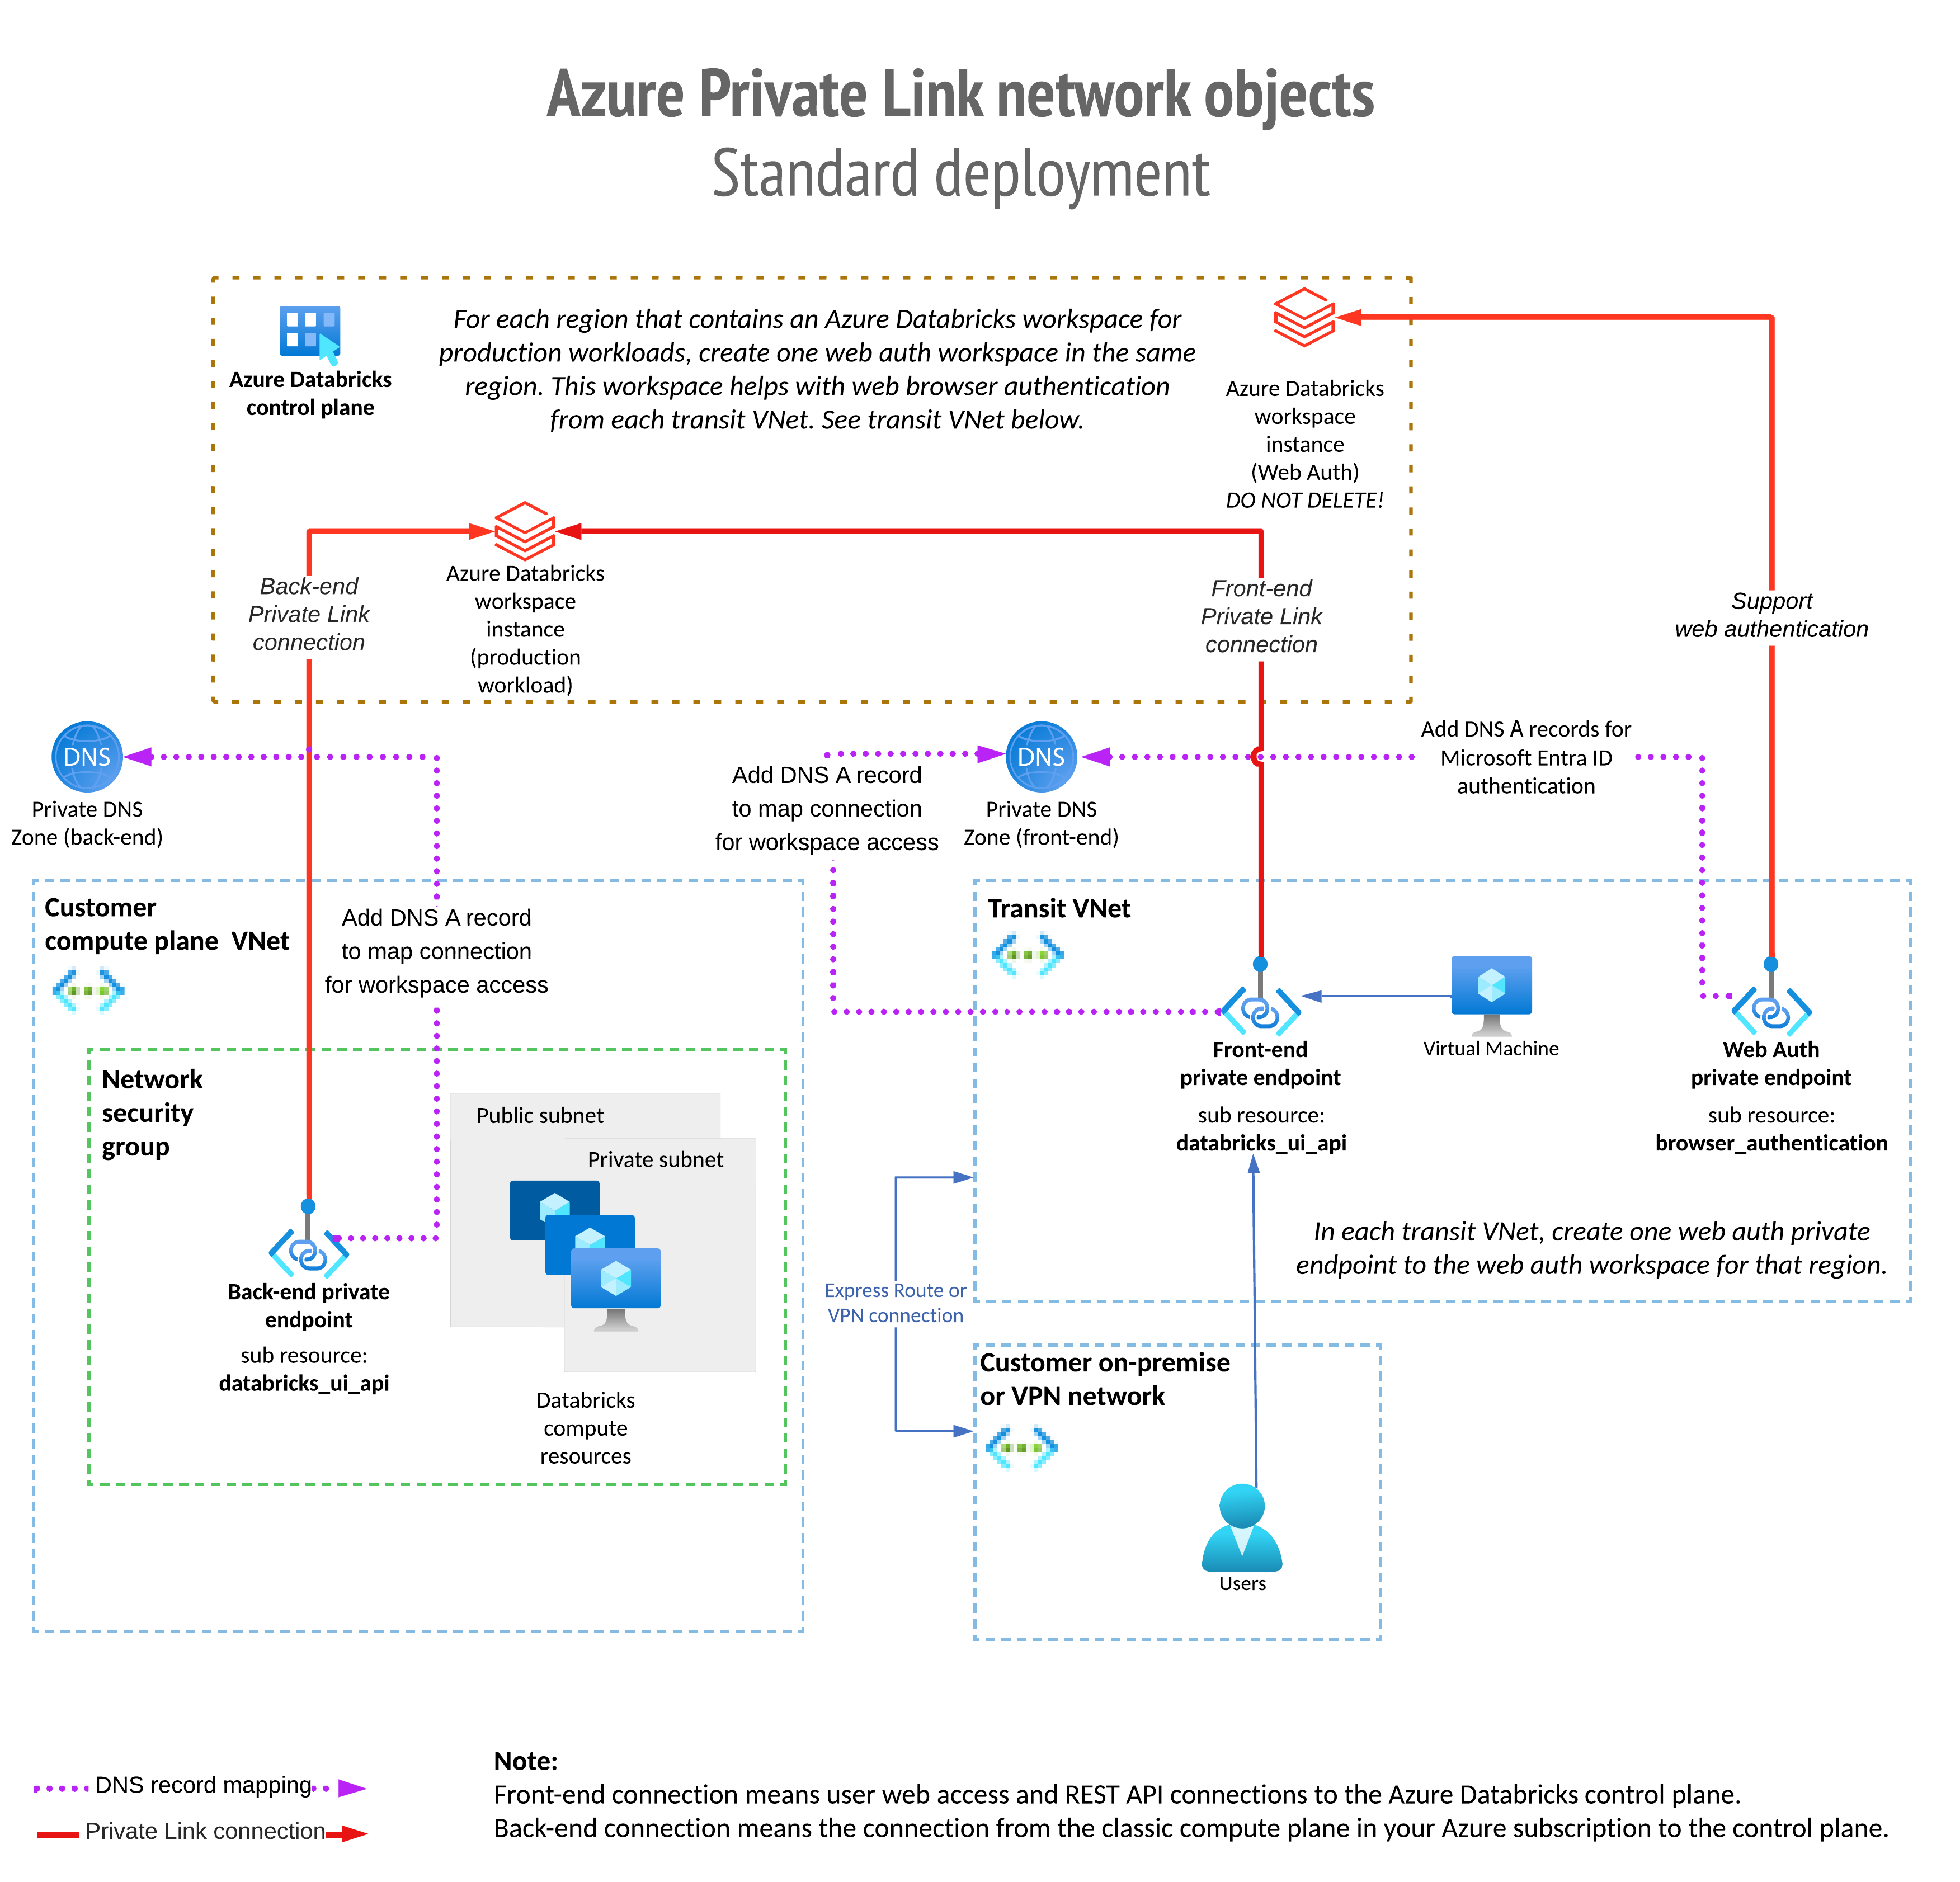 Architektura obiektu sieciowego usługi Azure Private Link.